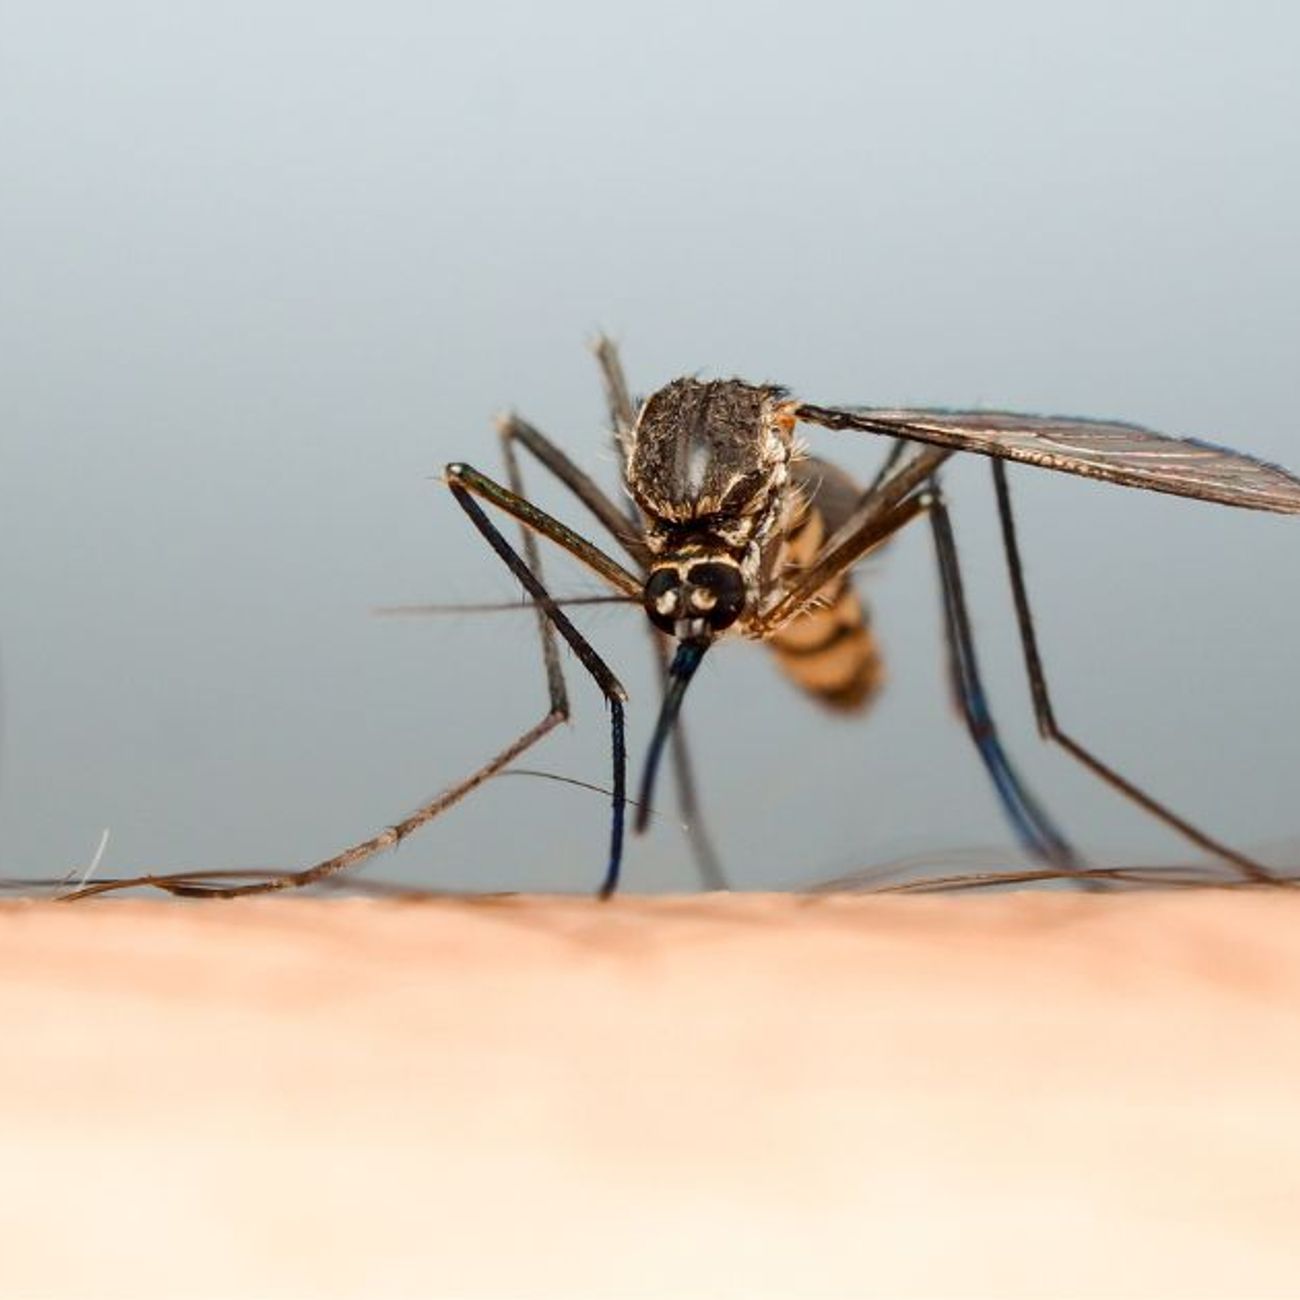 Des applications smartphones pour se protéger des moustiques